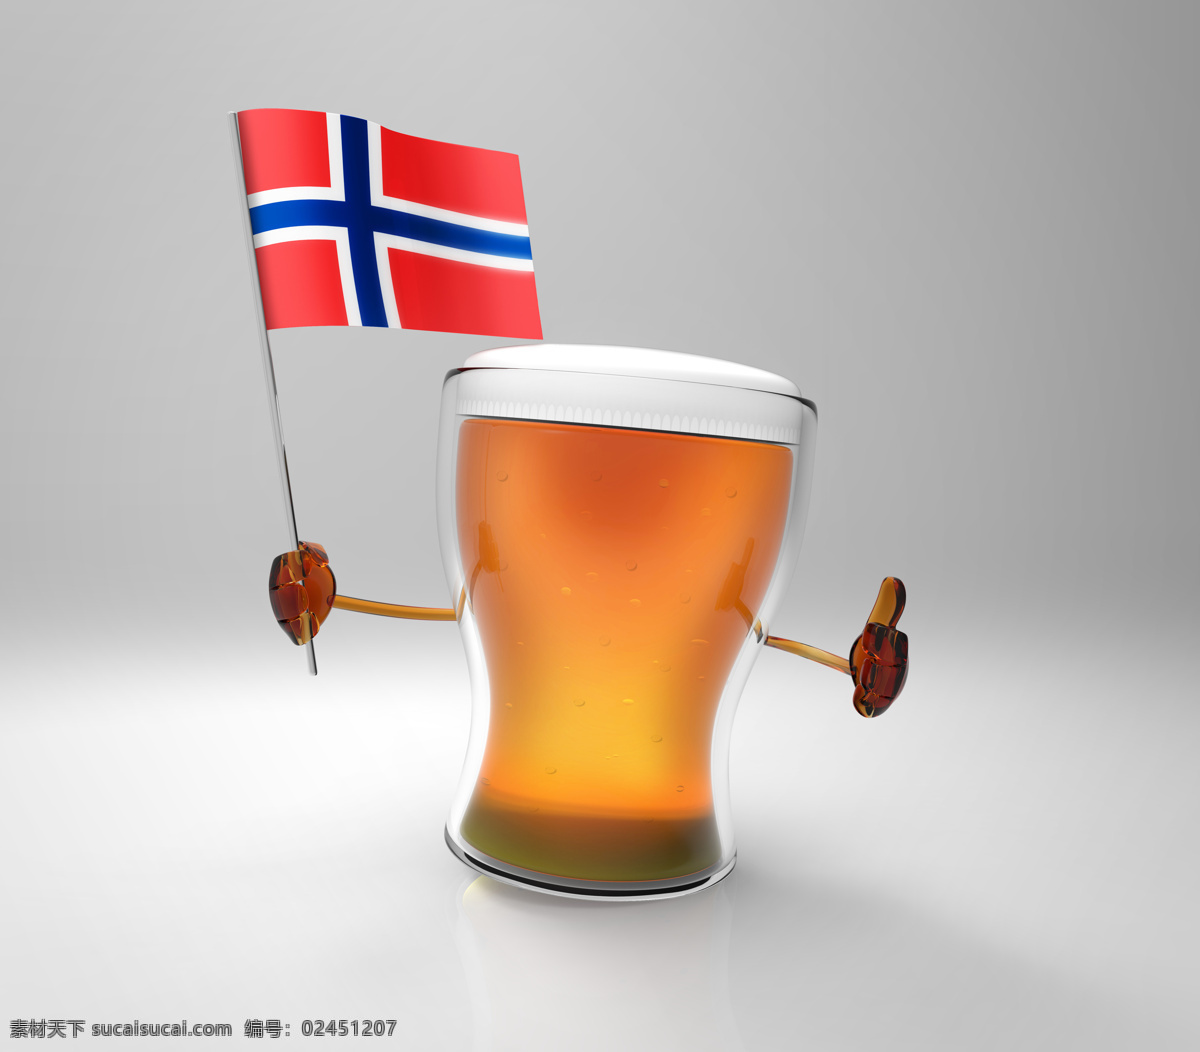 瑞典 国旗 啤酒 旗子 餐厅美食 美味 饮料 瑞典国旗 酒水饮料 酒类图片 餐饮美食